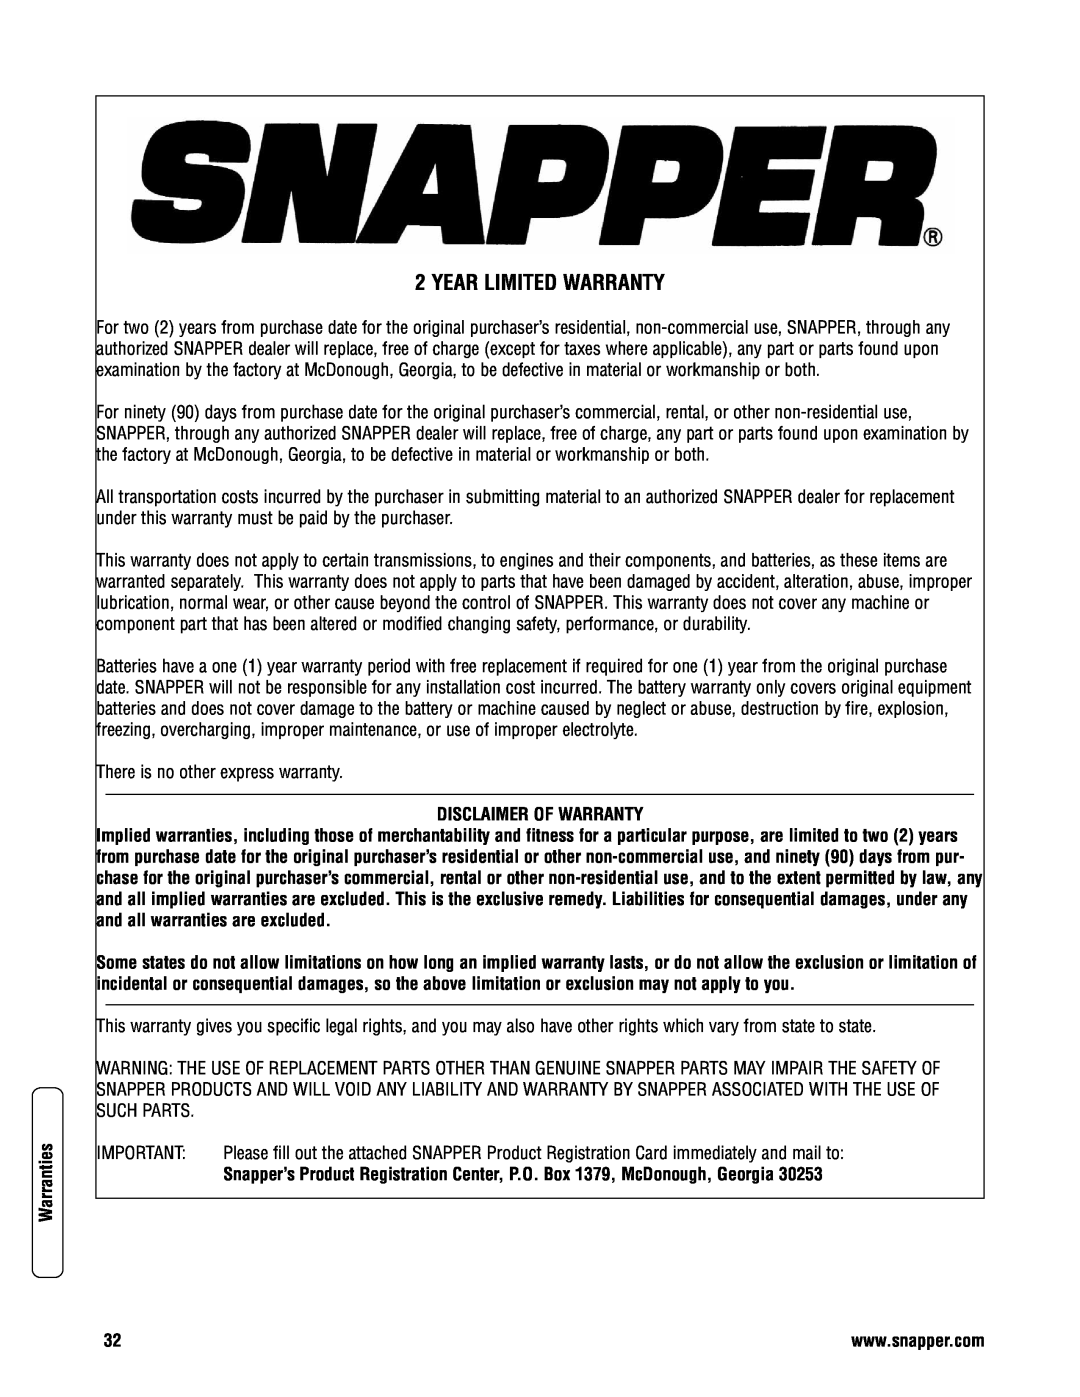 Snapper 3317523BVE specifications Year Limited Warranty, Warranties, Disclaimer Of Warranty 